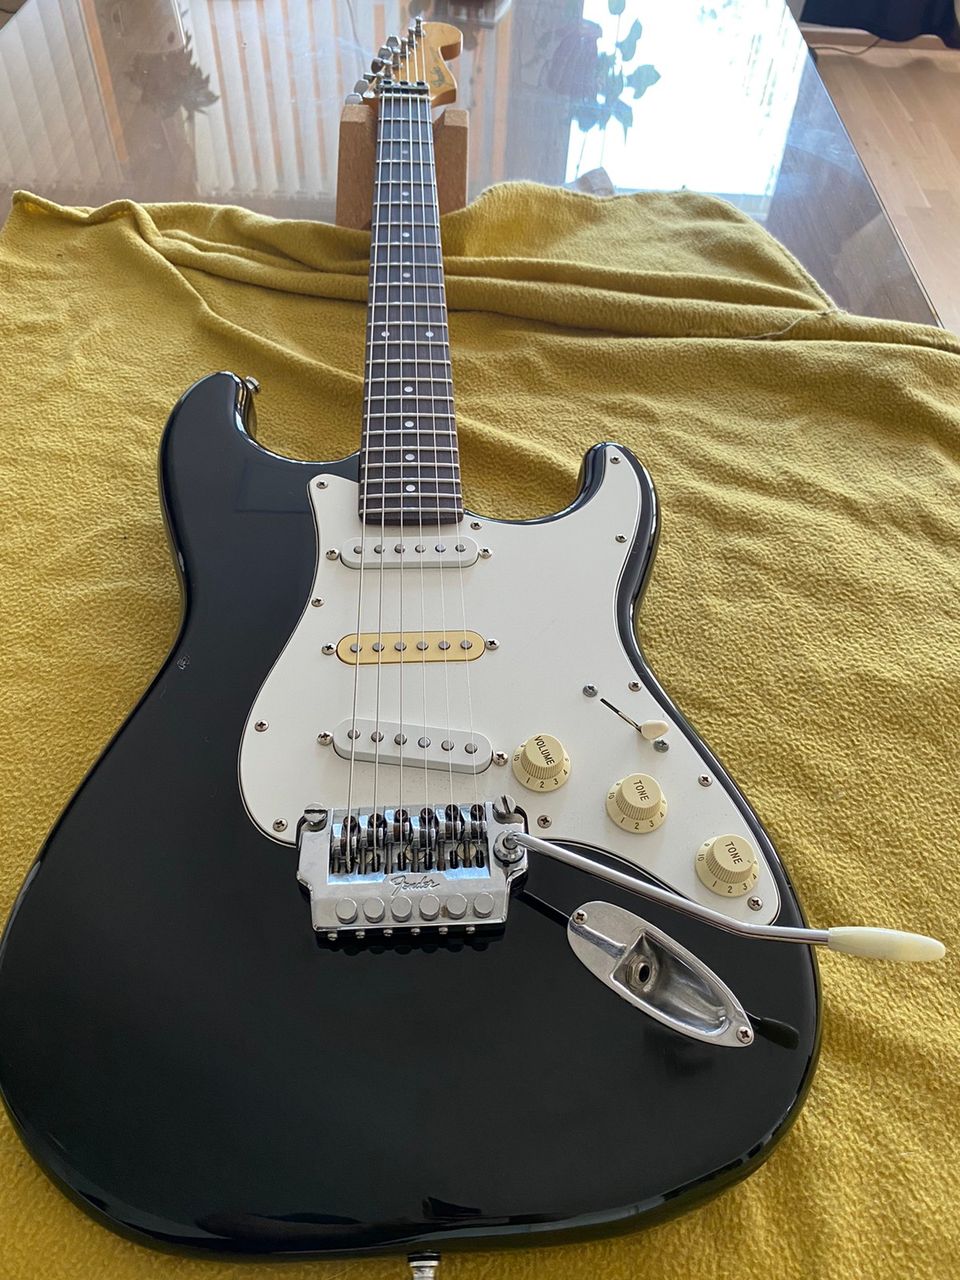 Fender stratocaster MIJ 85-86